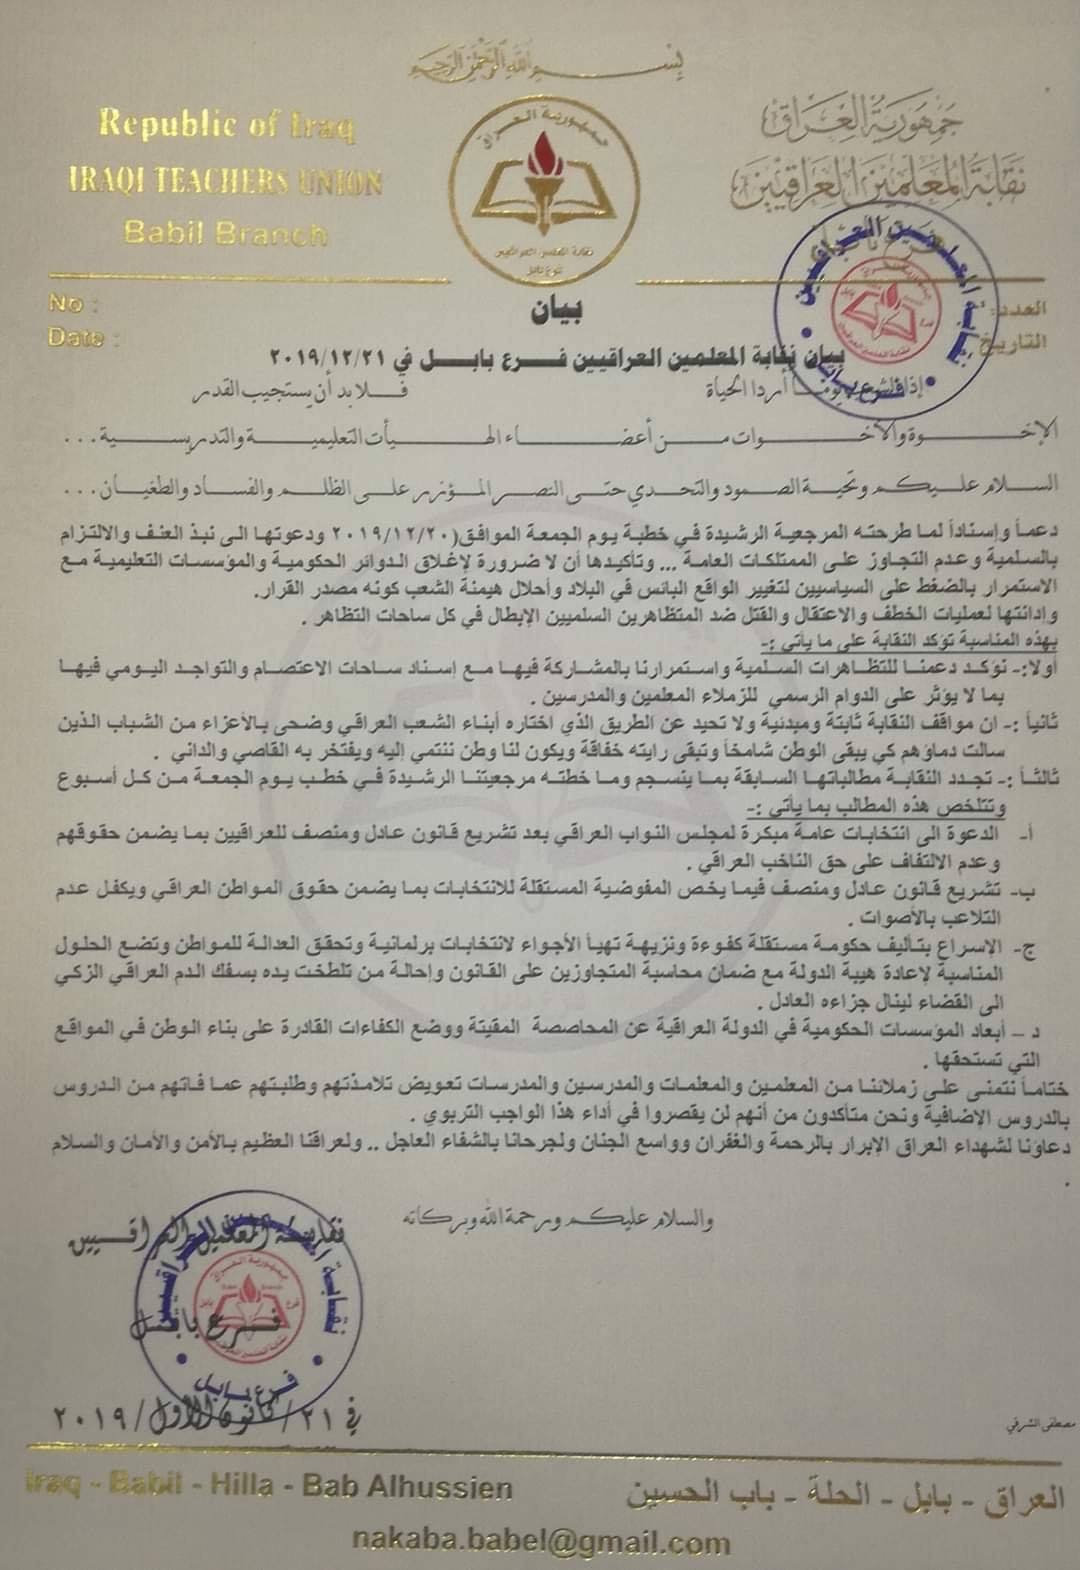 بالوثيقة : نقابة المعلمين في بابل تؤكد على الدوام الرسمي للمعلمين والمدرسين وعدم إغلاق المؤسسات التعليمية